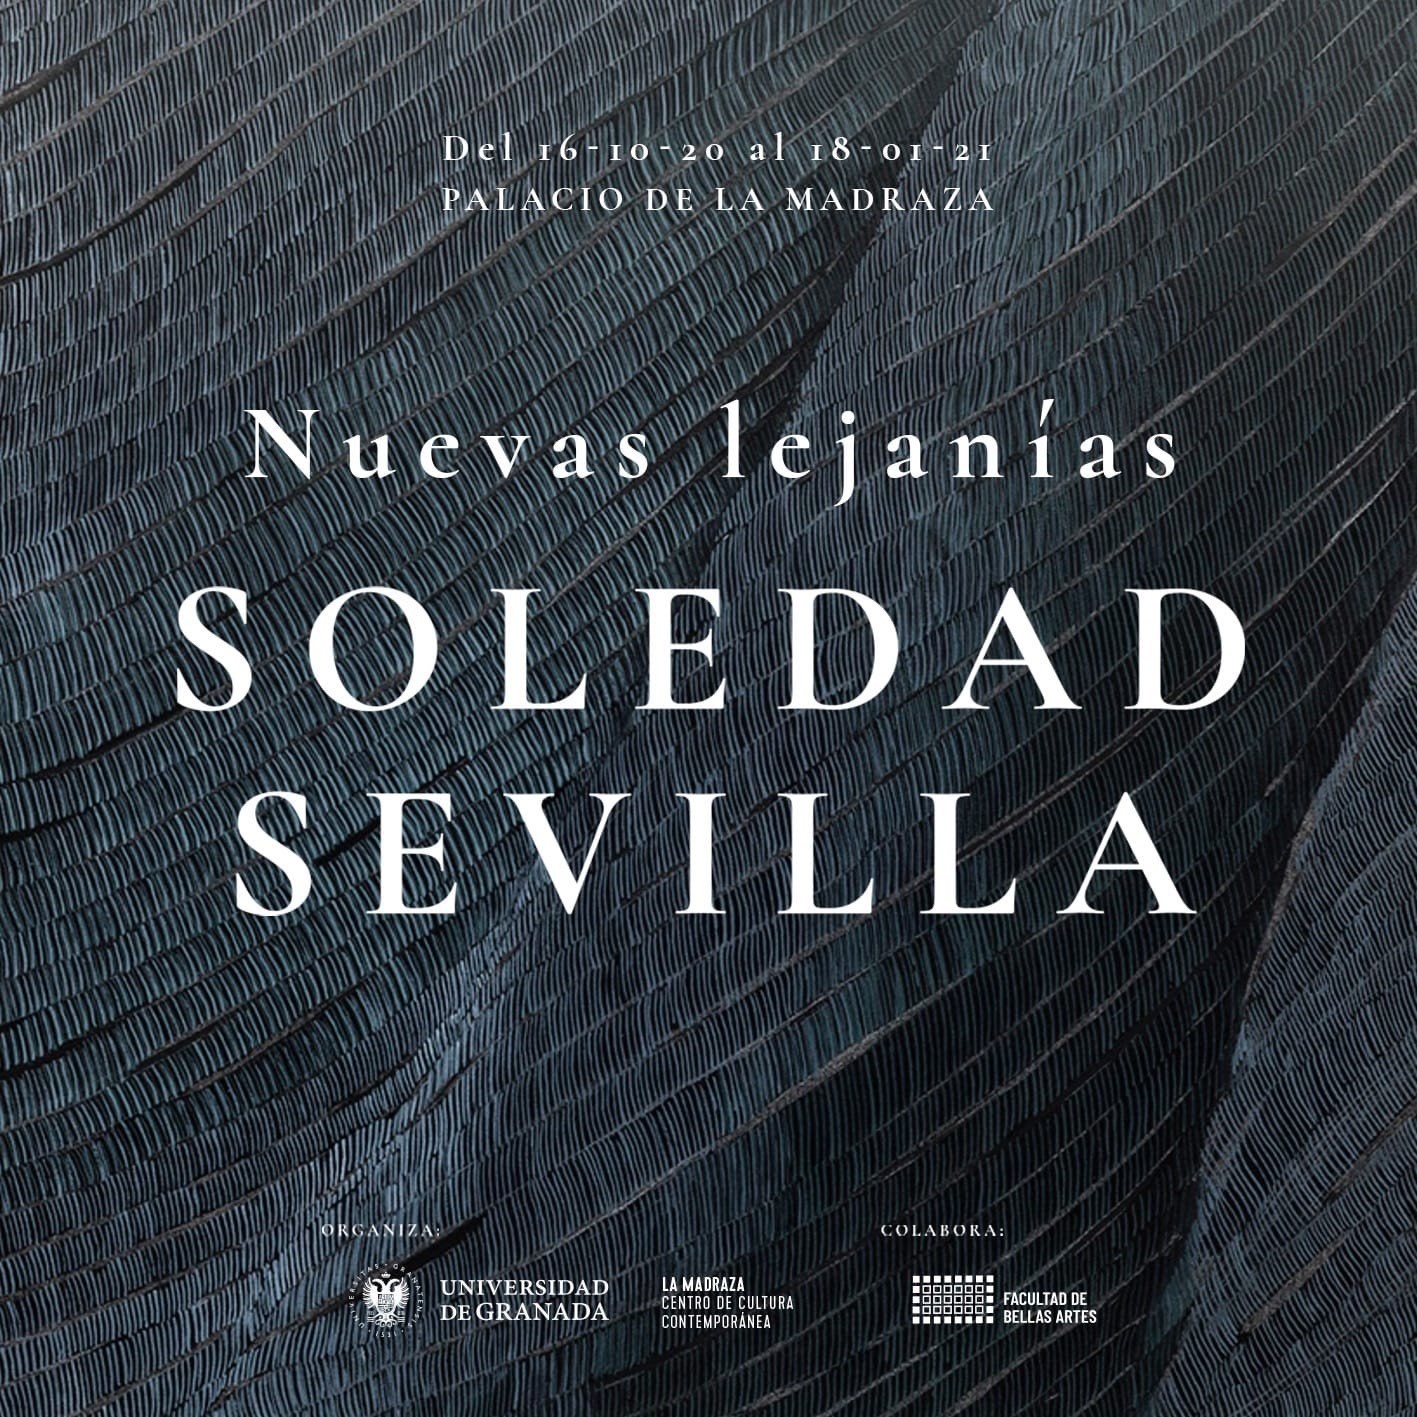 Soledad Sevilla inaugura exposición en el Palacio de la Madraza de Granada